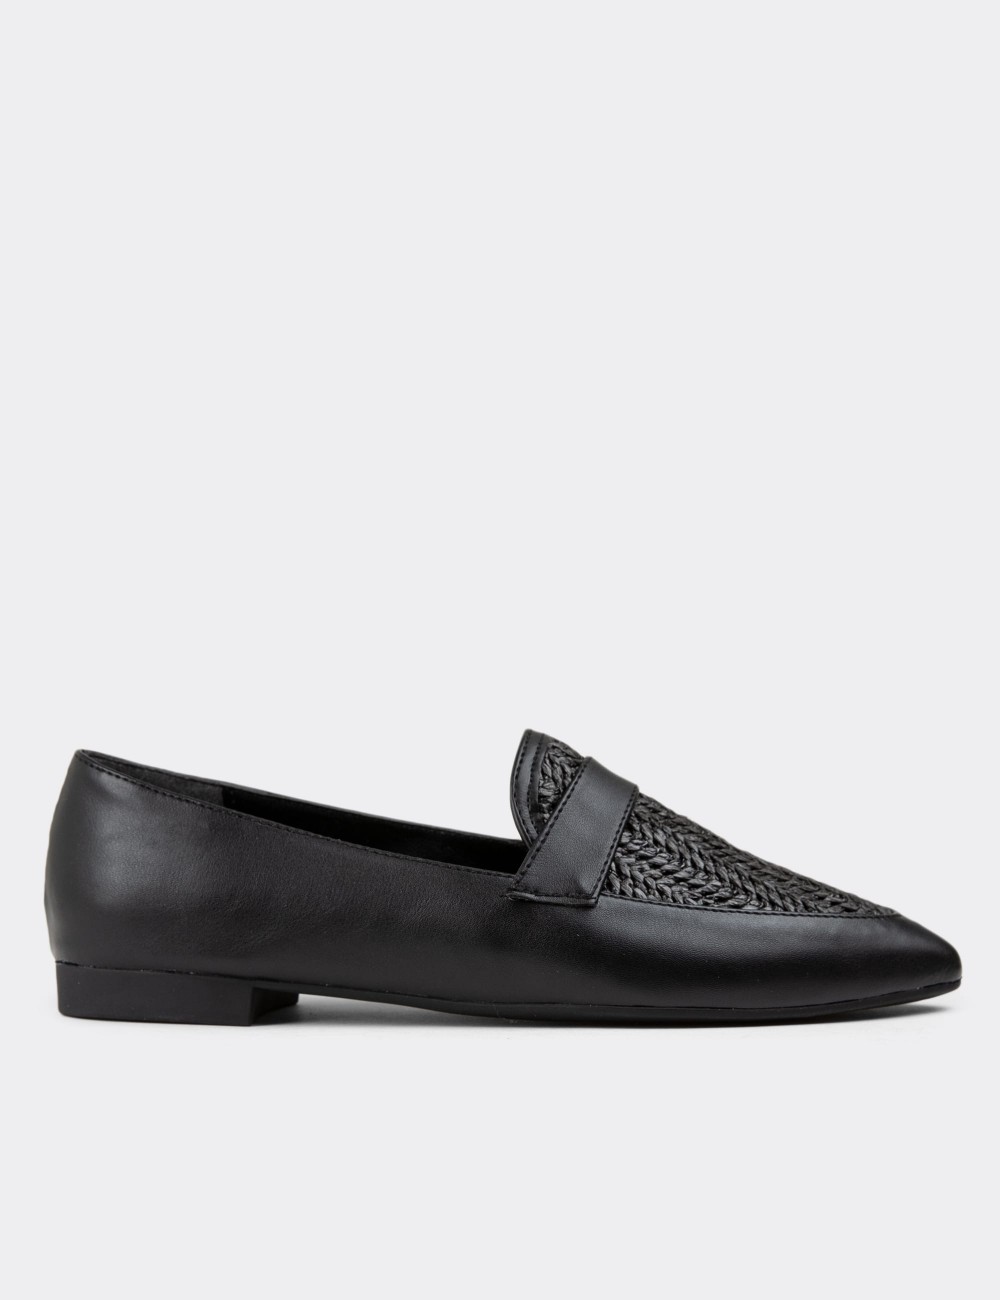 Black Loafers - 38602ZSYHC01